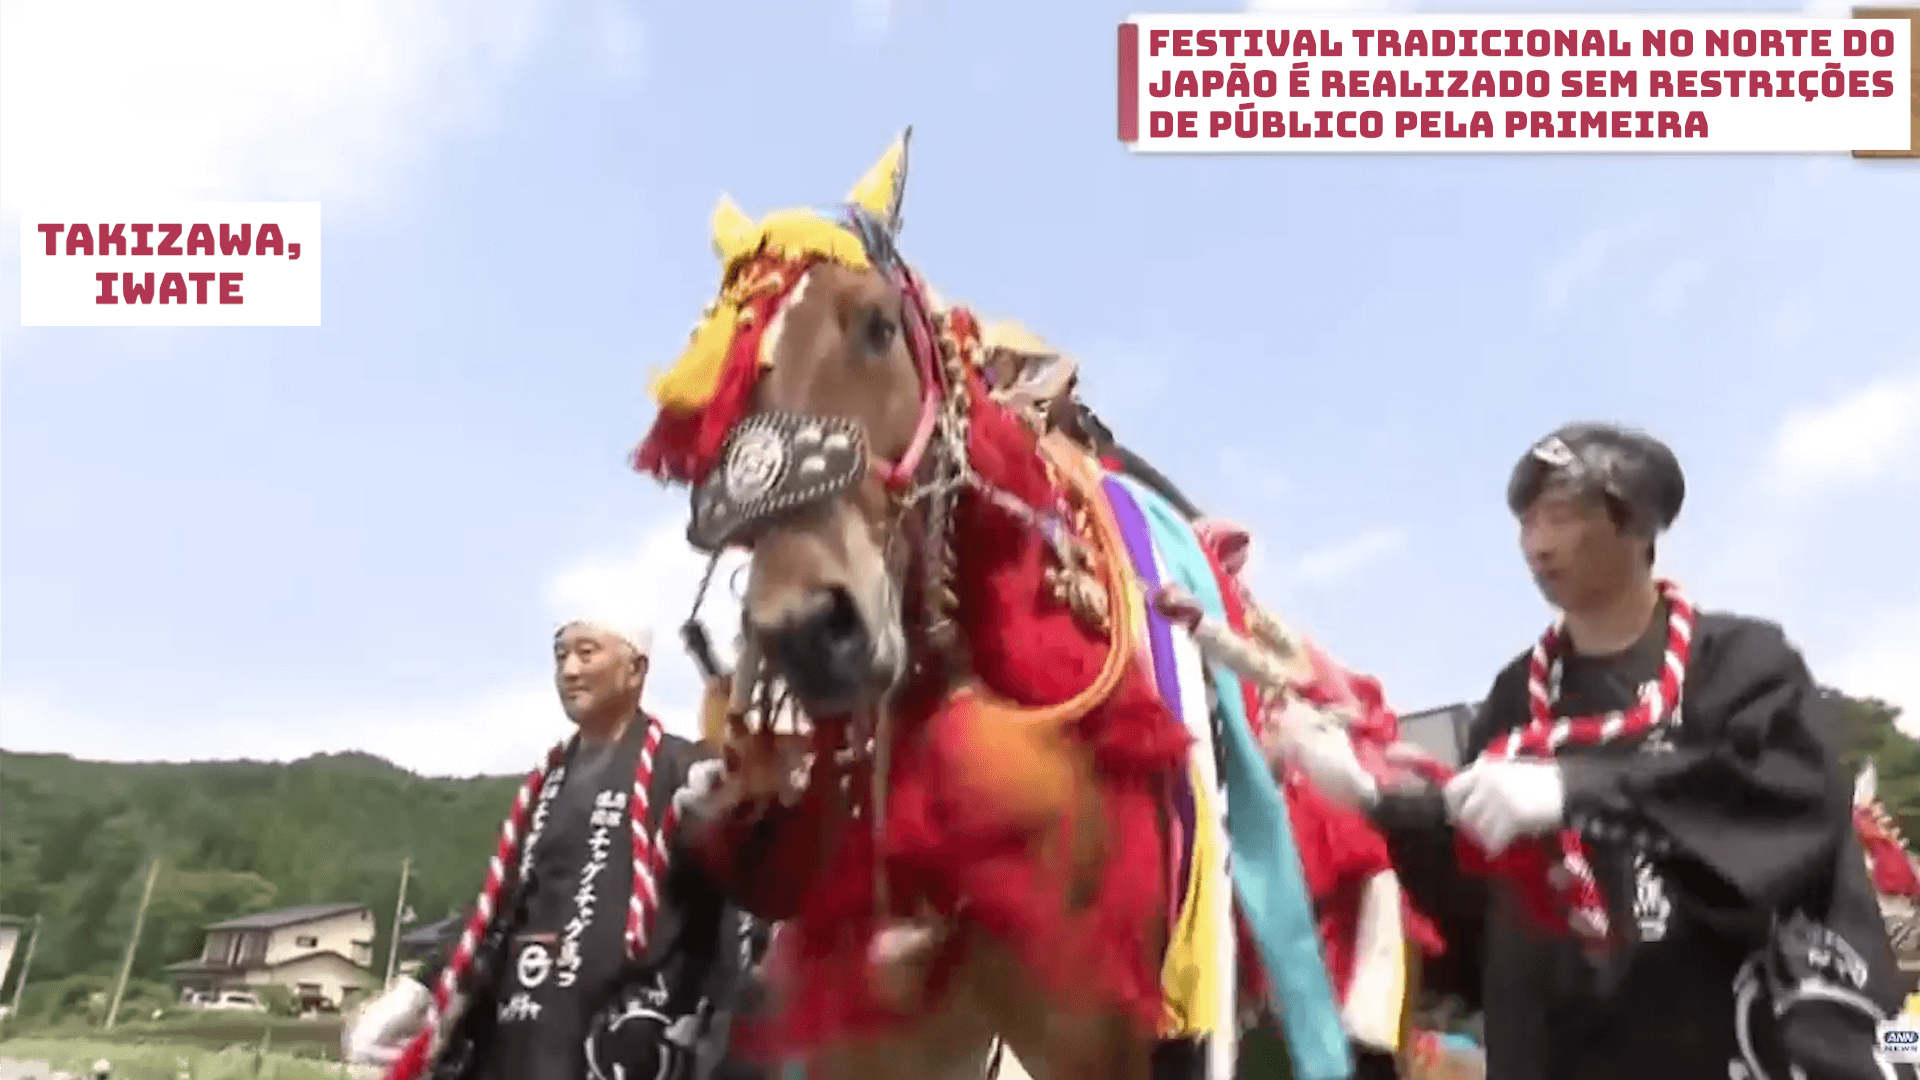 Festival tradicional no norte do Japão é realizado sem restrições de público pela primeira